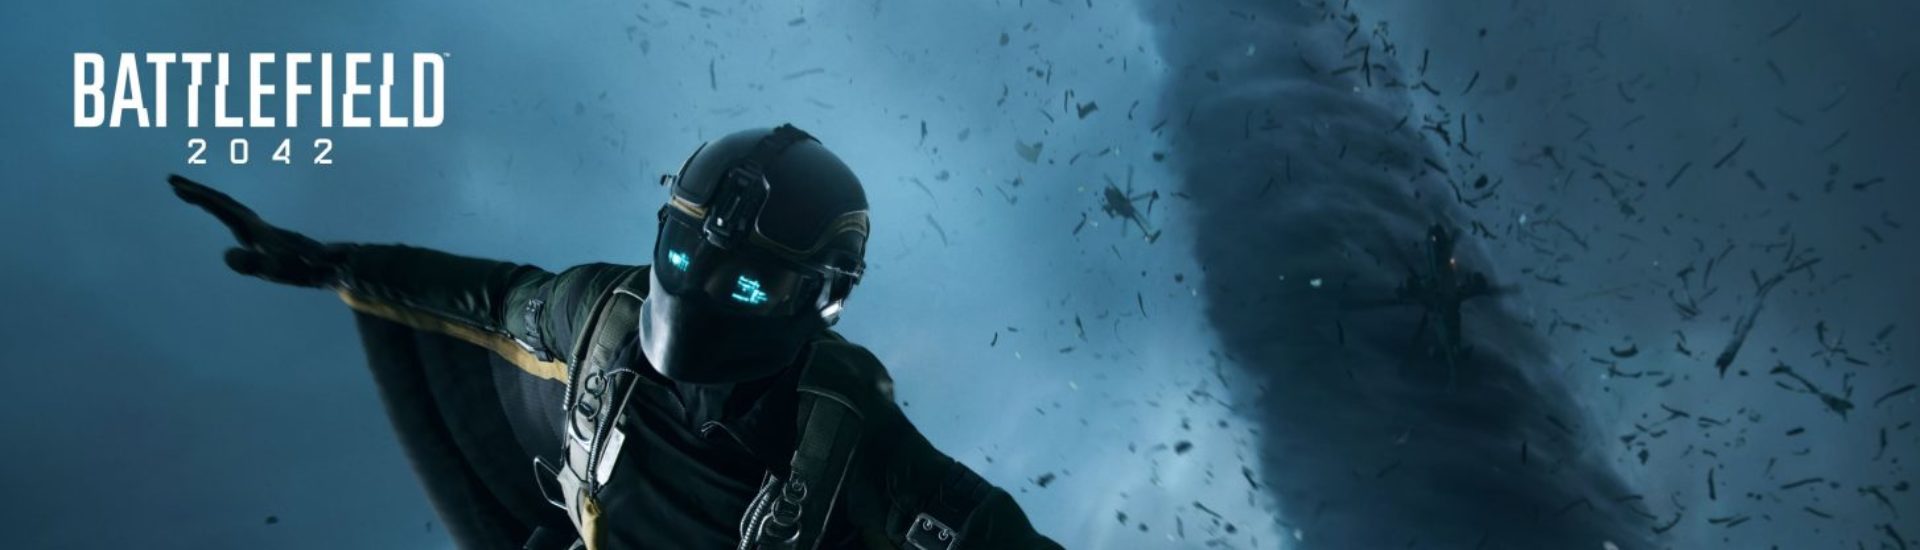 Battlefield 2042: Wingsuit-Action im neuen Trailer